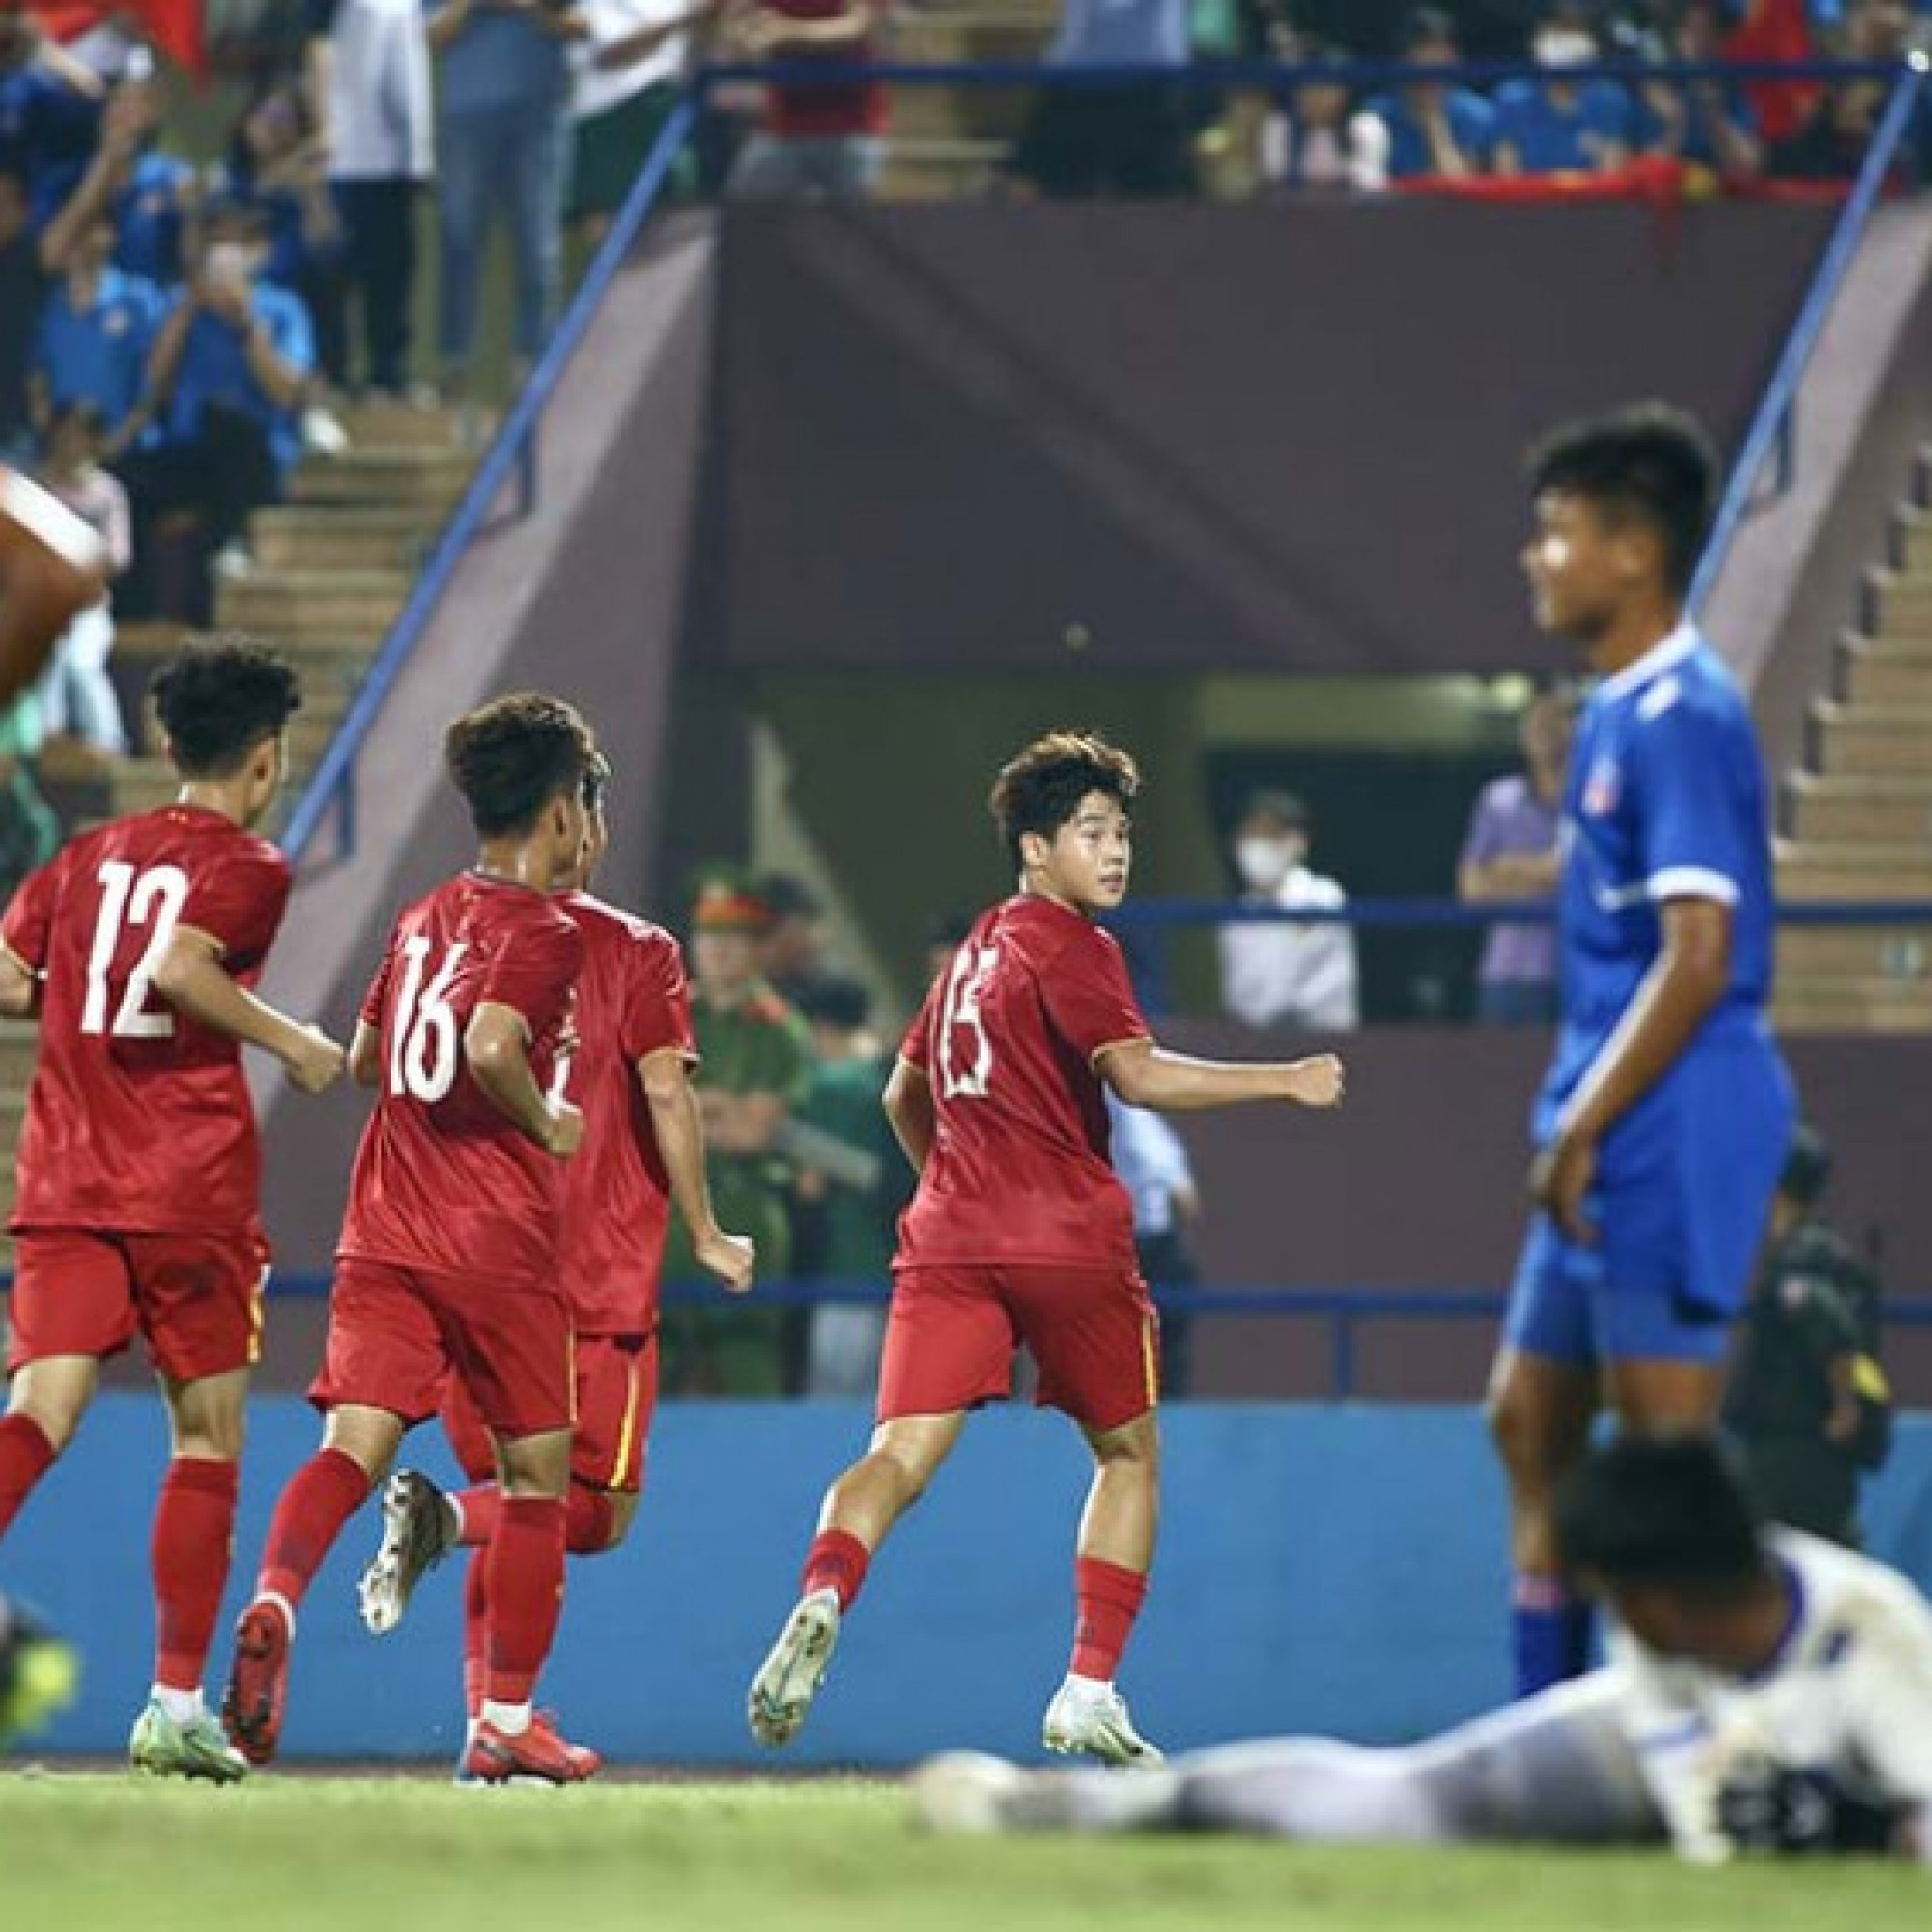  - Kết quả bóng đá U17 Việt Nam - U17 Nepal: "Hủy diệt" 5 bàn, lợi thế đấu Thái Lan (Vòng loại U17 châu Á)